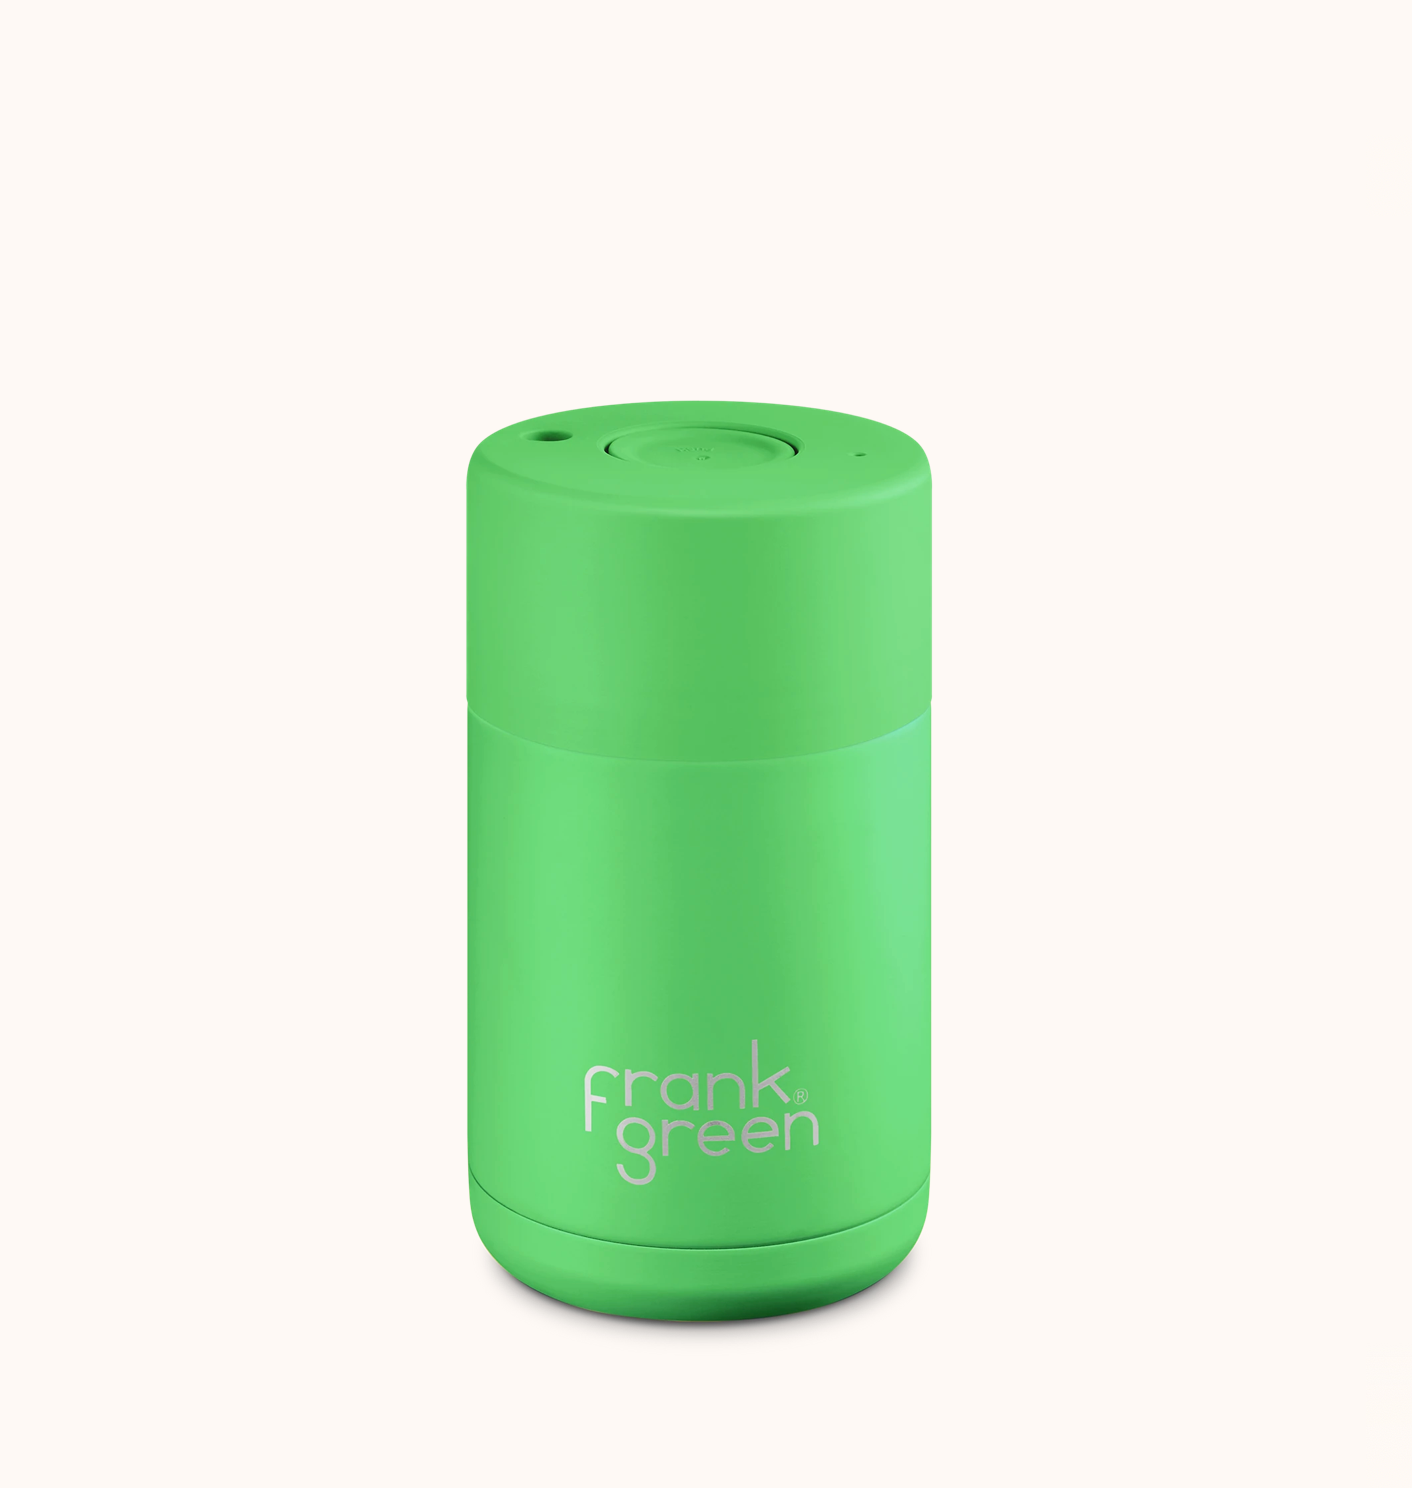 Frank Green Ceramic Reusable Cup 10oz, Neon Green